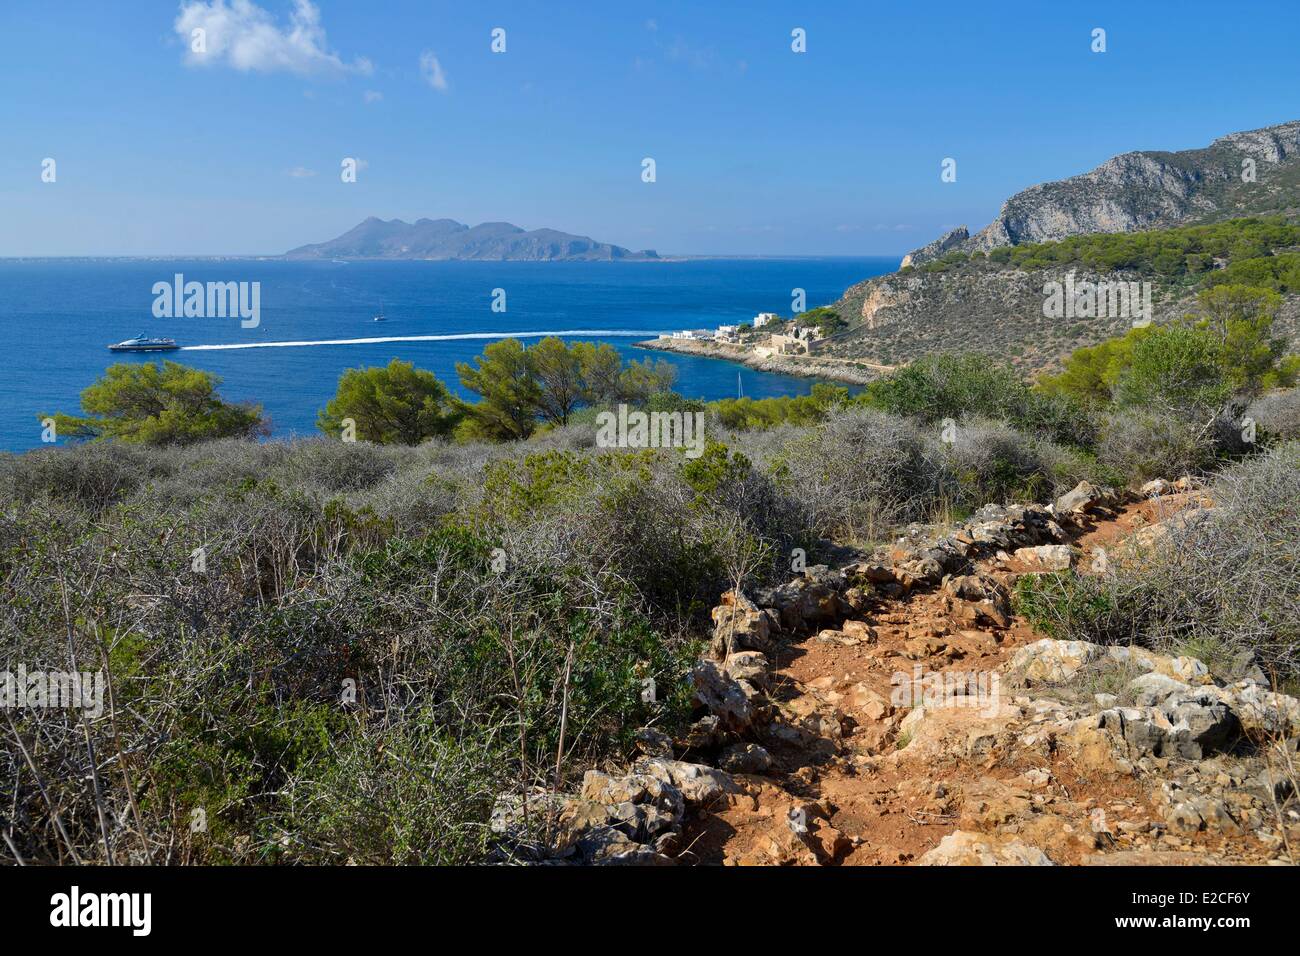 L'Italia, sicilia, isole Egadi, isola di Levanzo, sentiero di montagna con il mare e l'isola di Favignana in background Foto Stock